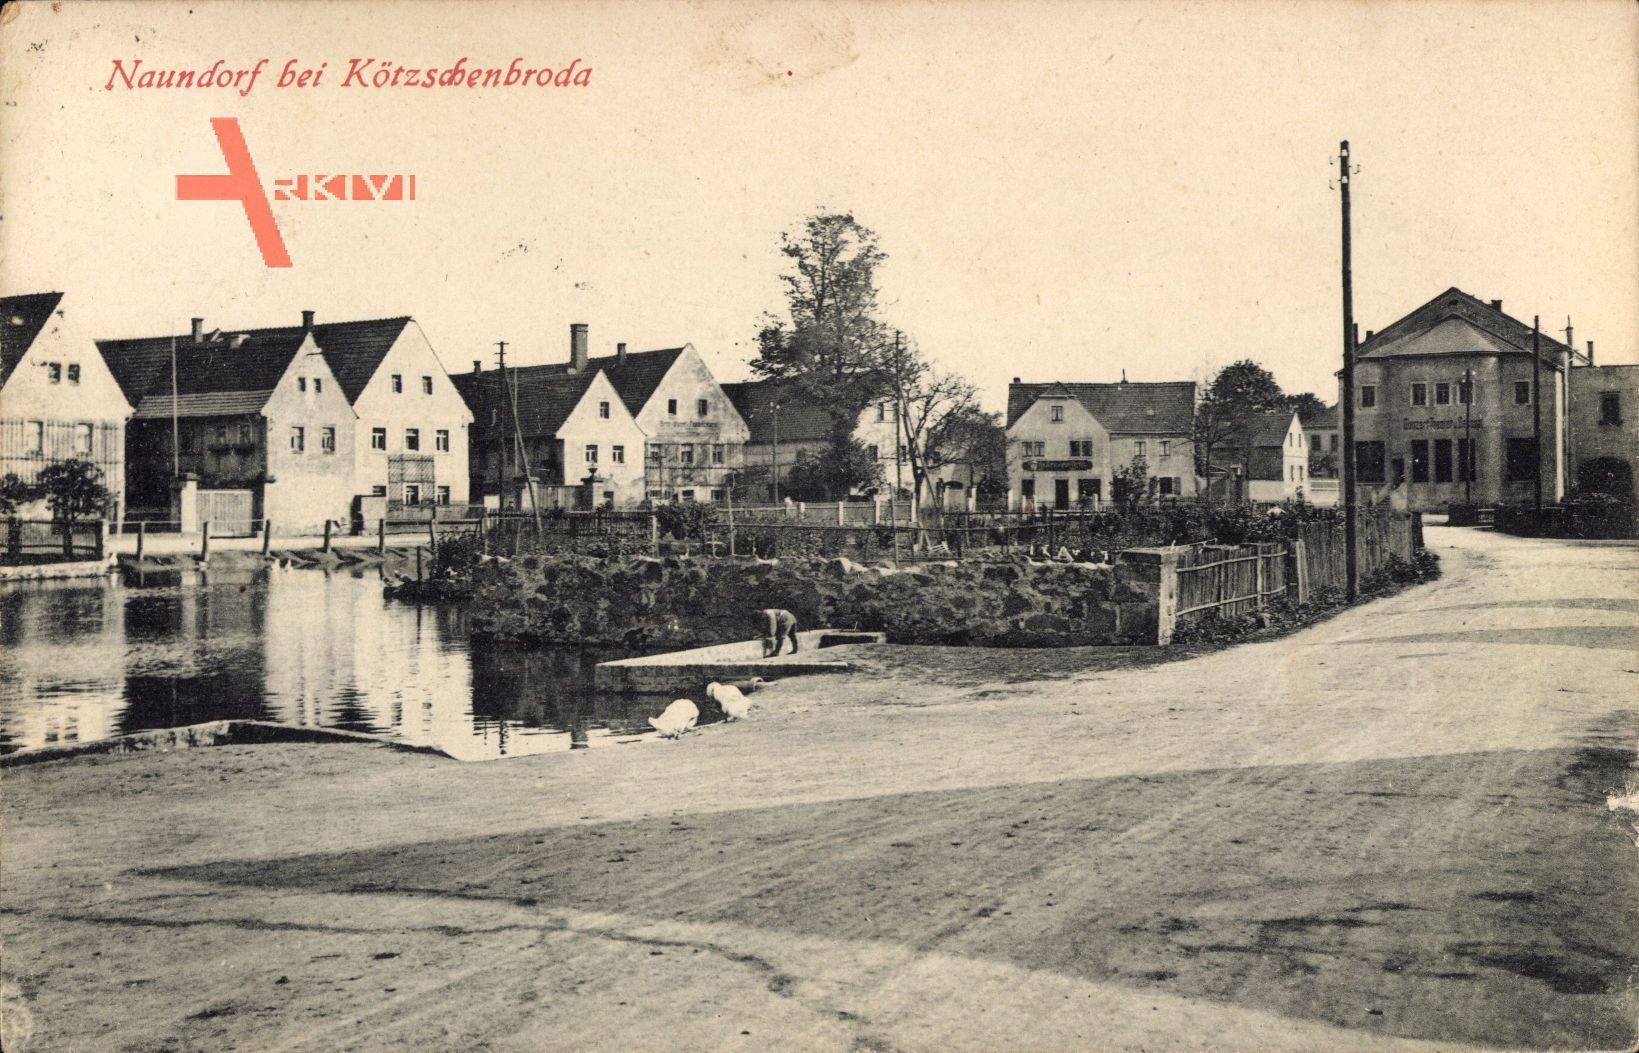 Naundorf Radebeul, Straßenpartie im Ort, Teich, Theater, Schwäne, Häuser